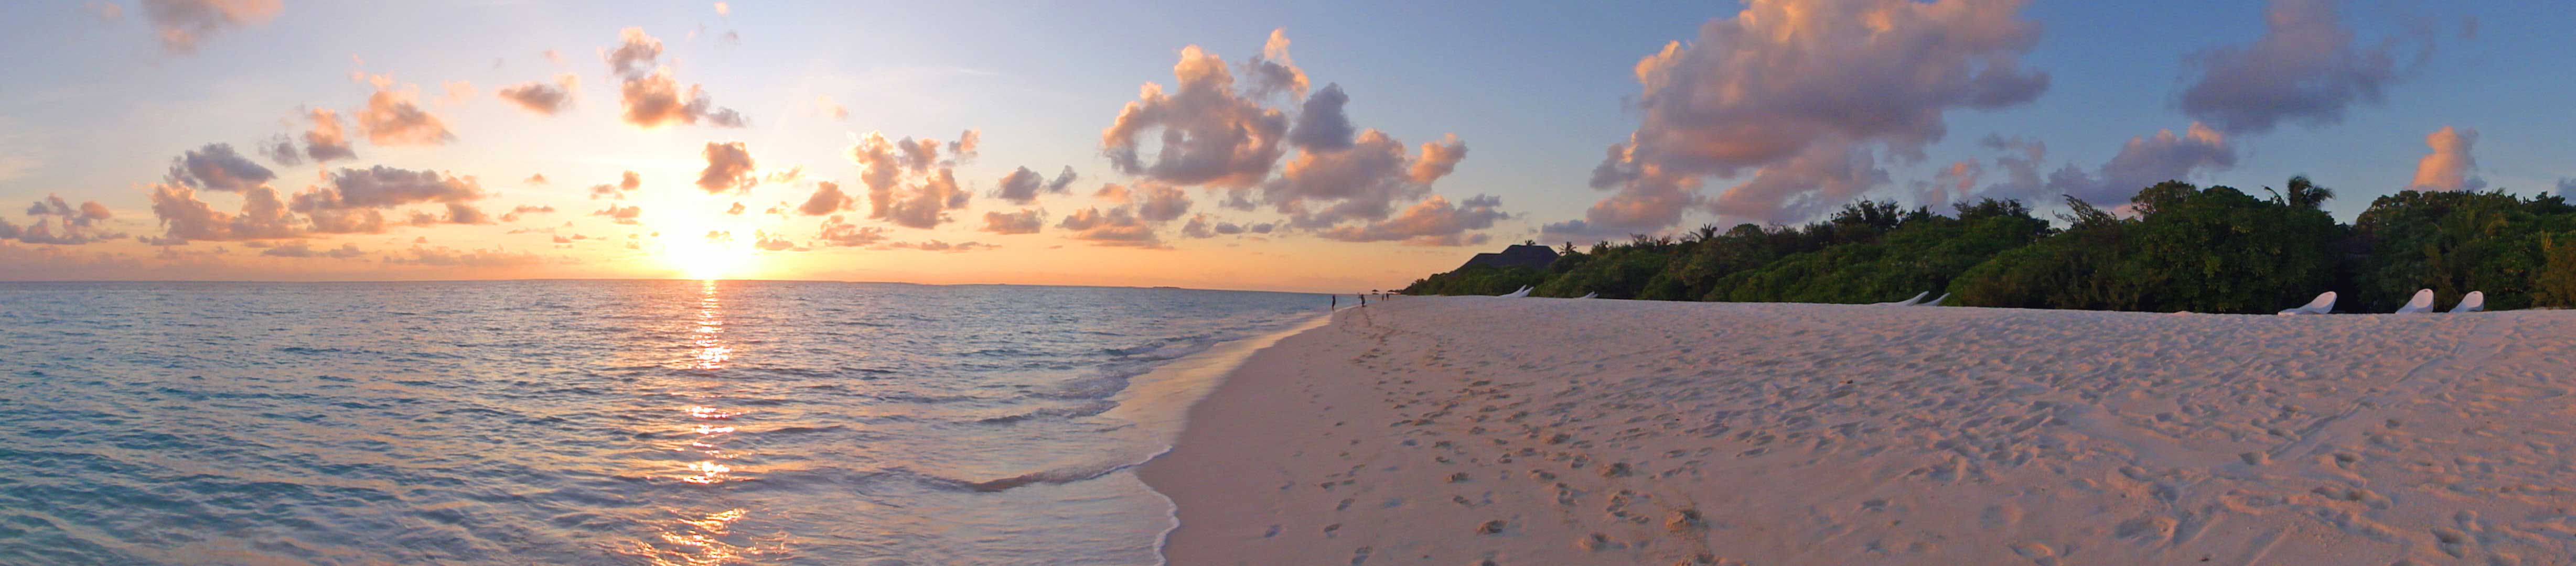 viaggio di nozze maldive: tramonto in spiaggia